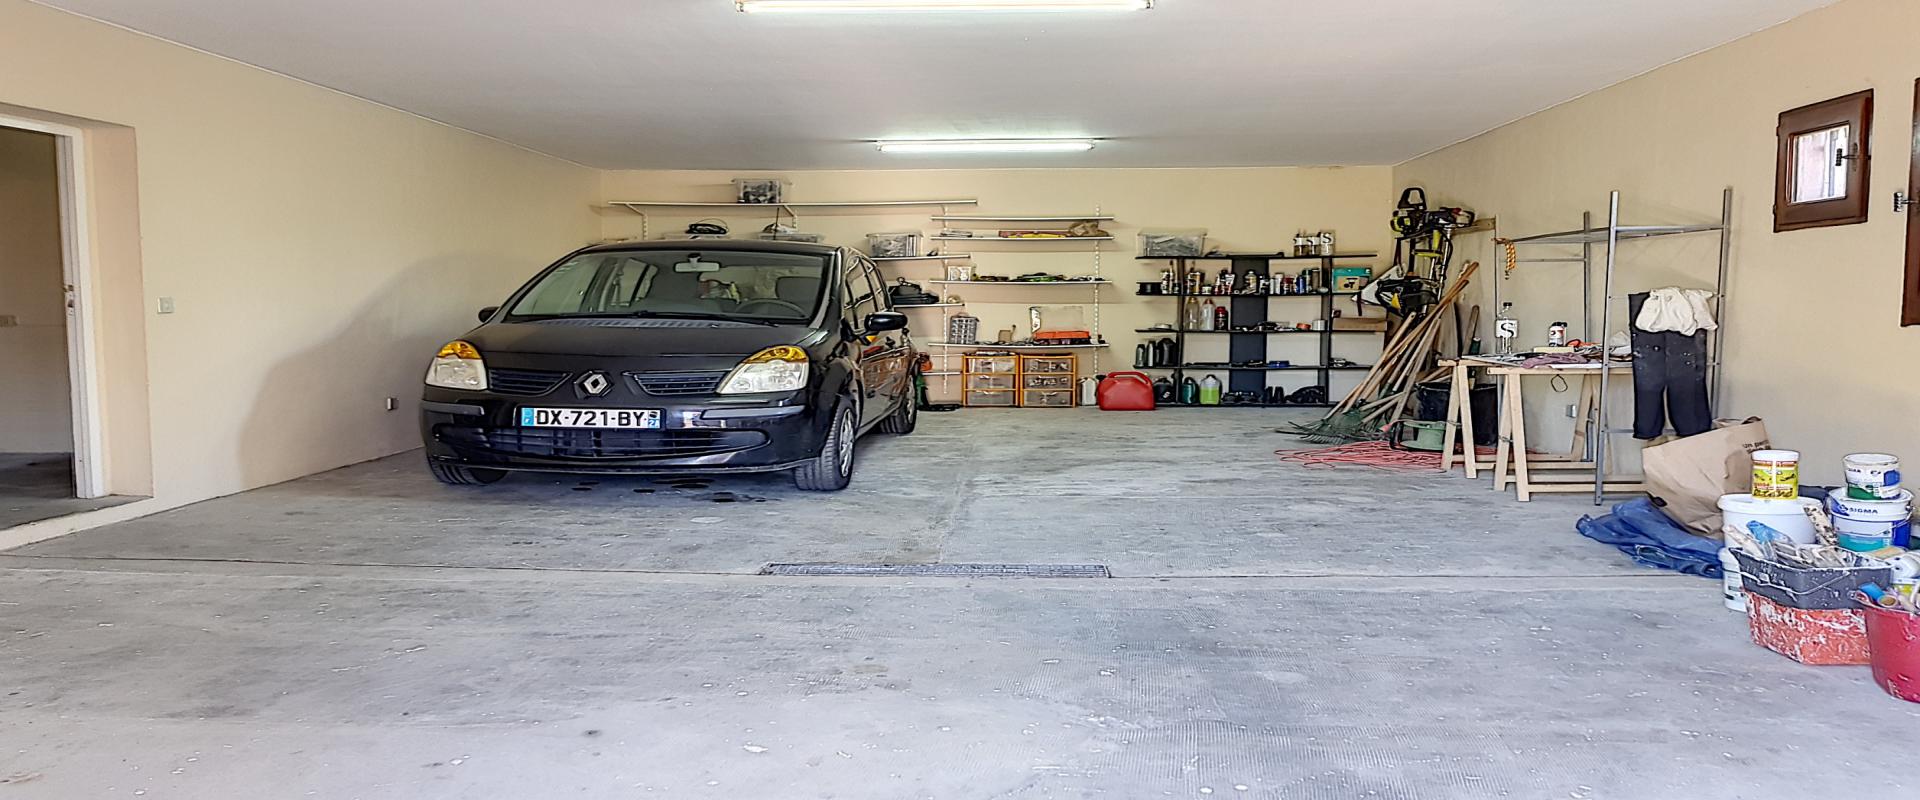 A louer villa Salario garage